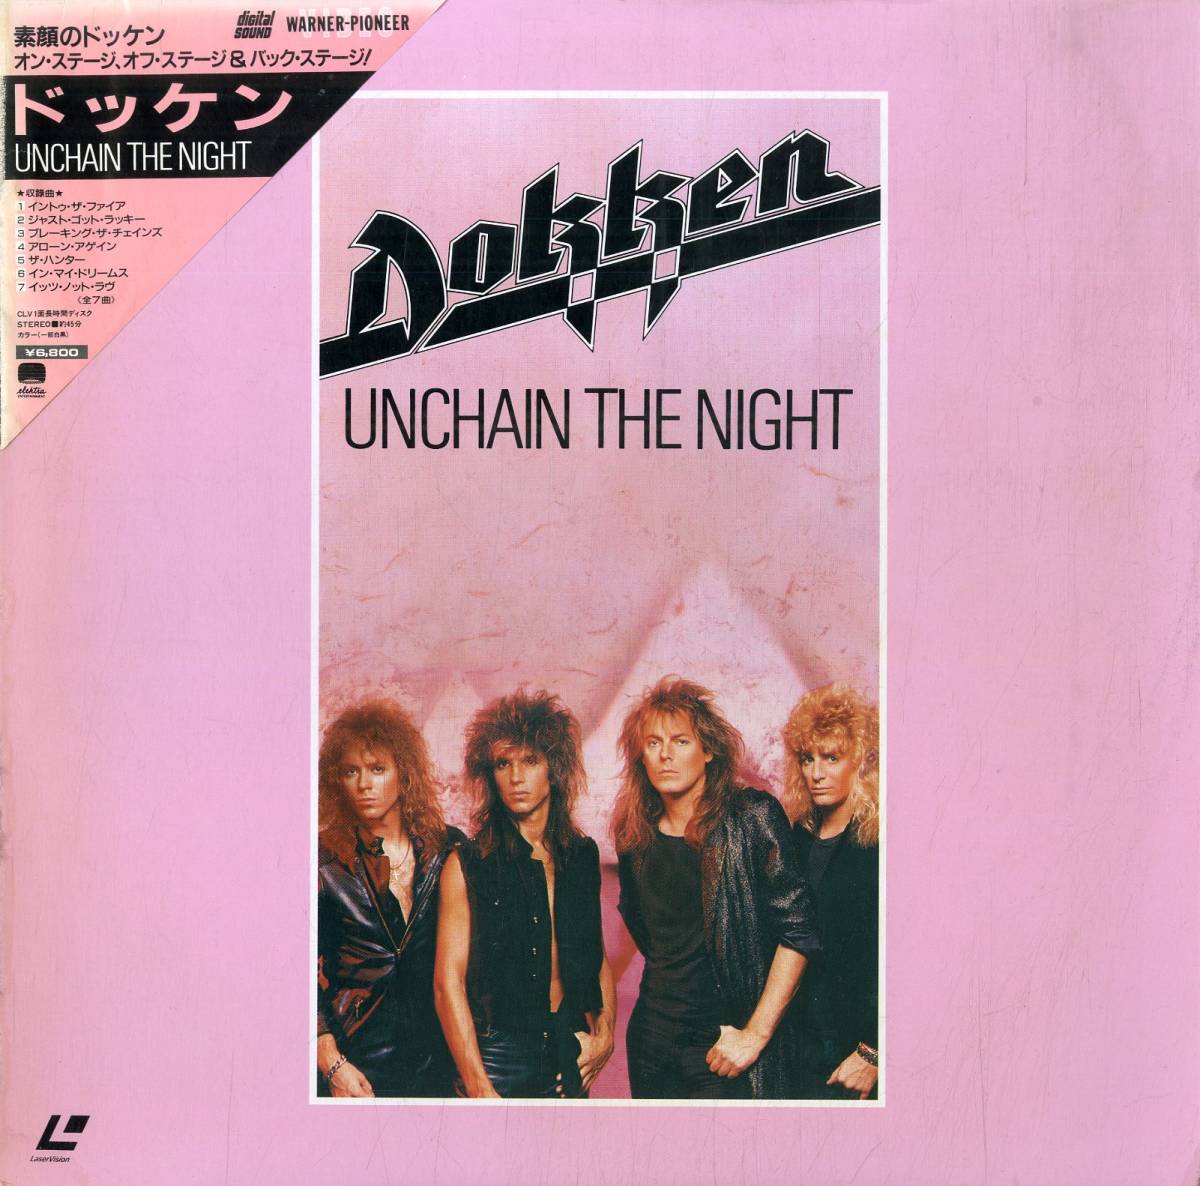 B00172781/【洋楽】LD/ドッケン (DOKKEN)「Unchain The Night (1987年・07WL-40102・ハードロック)」_画像1